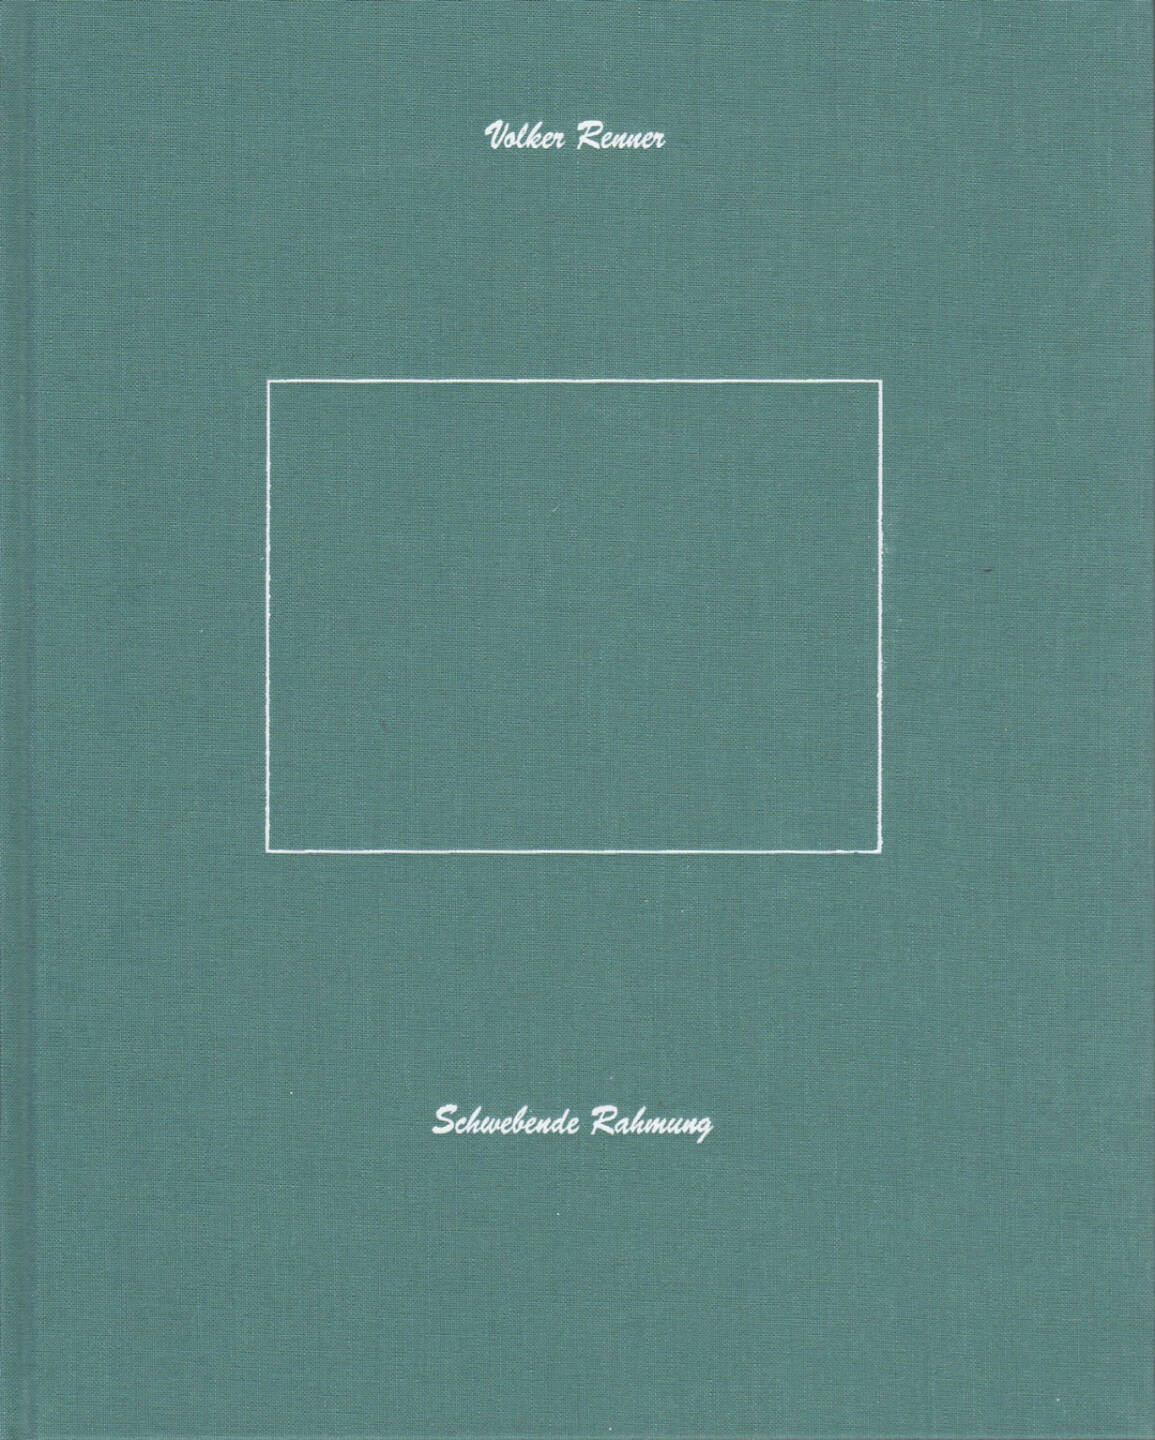 Volker Renner - Schwebende Rahmung, Textem Verlag 2013, Cover - http://josefchladek.com/book/volker_renner_-_schwebende_rahmung